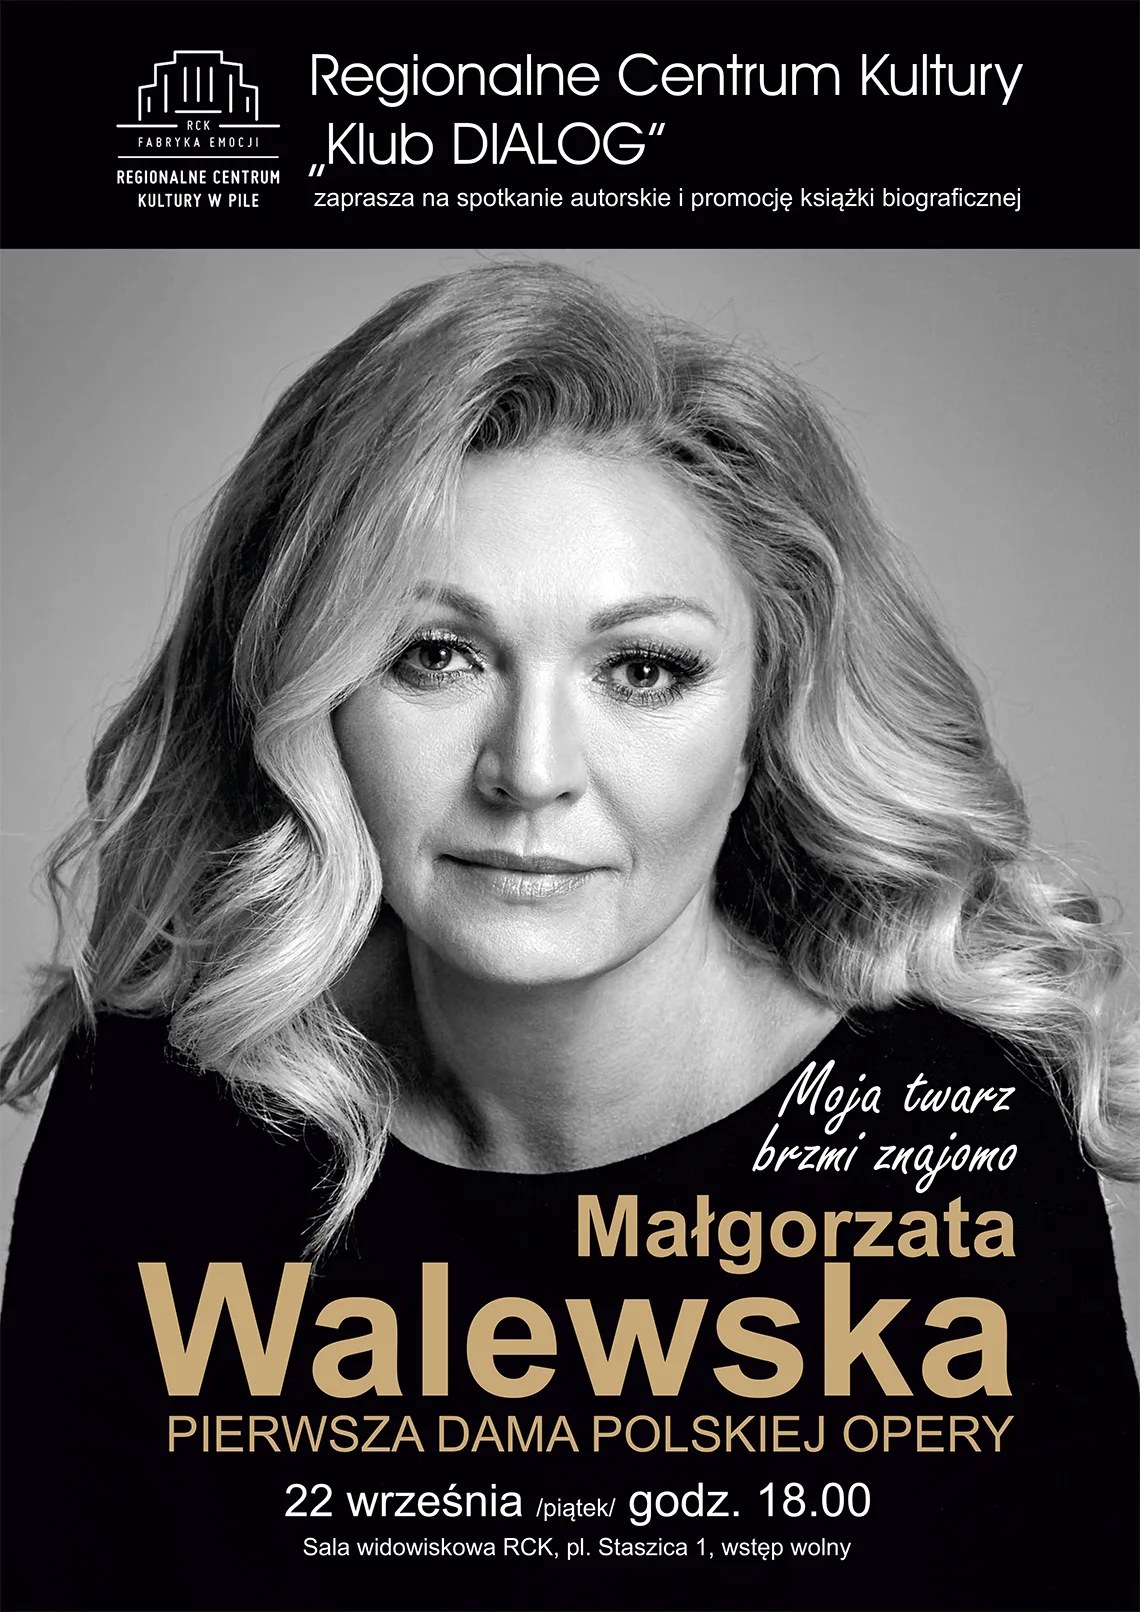 Zdjęcie czarno-białe kobiety, napis RCK Klub Dialog zaprasza na spotkanie autorskie z Małgorzatą Walewską, pierwszą damą polskiej opery, 22 września godzina 18:00